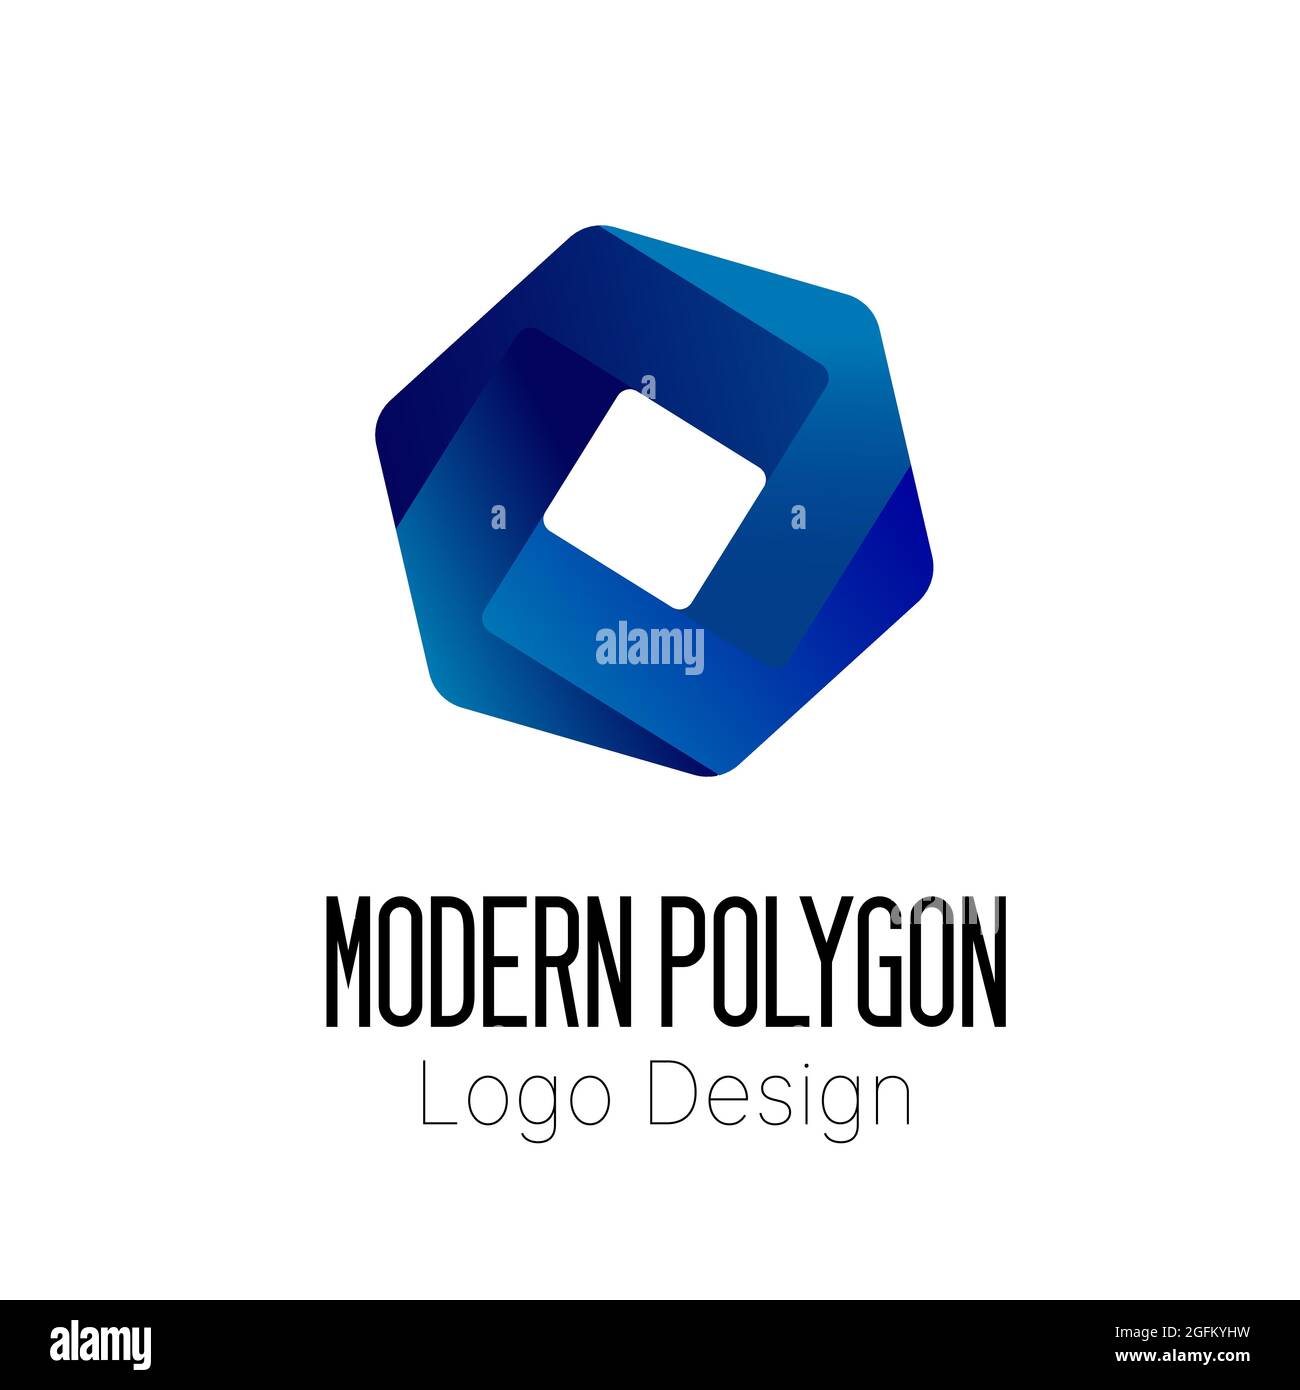 Vektor-Illustration des abstrakten modernen Polygon-Logo-Designs für Unternehmen auf weißem Hintergrund. Stock Vektor